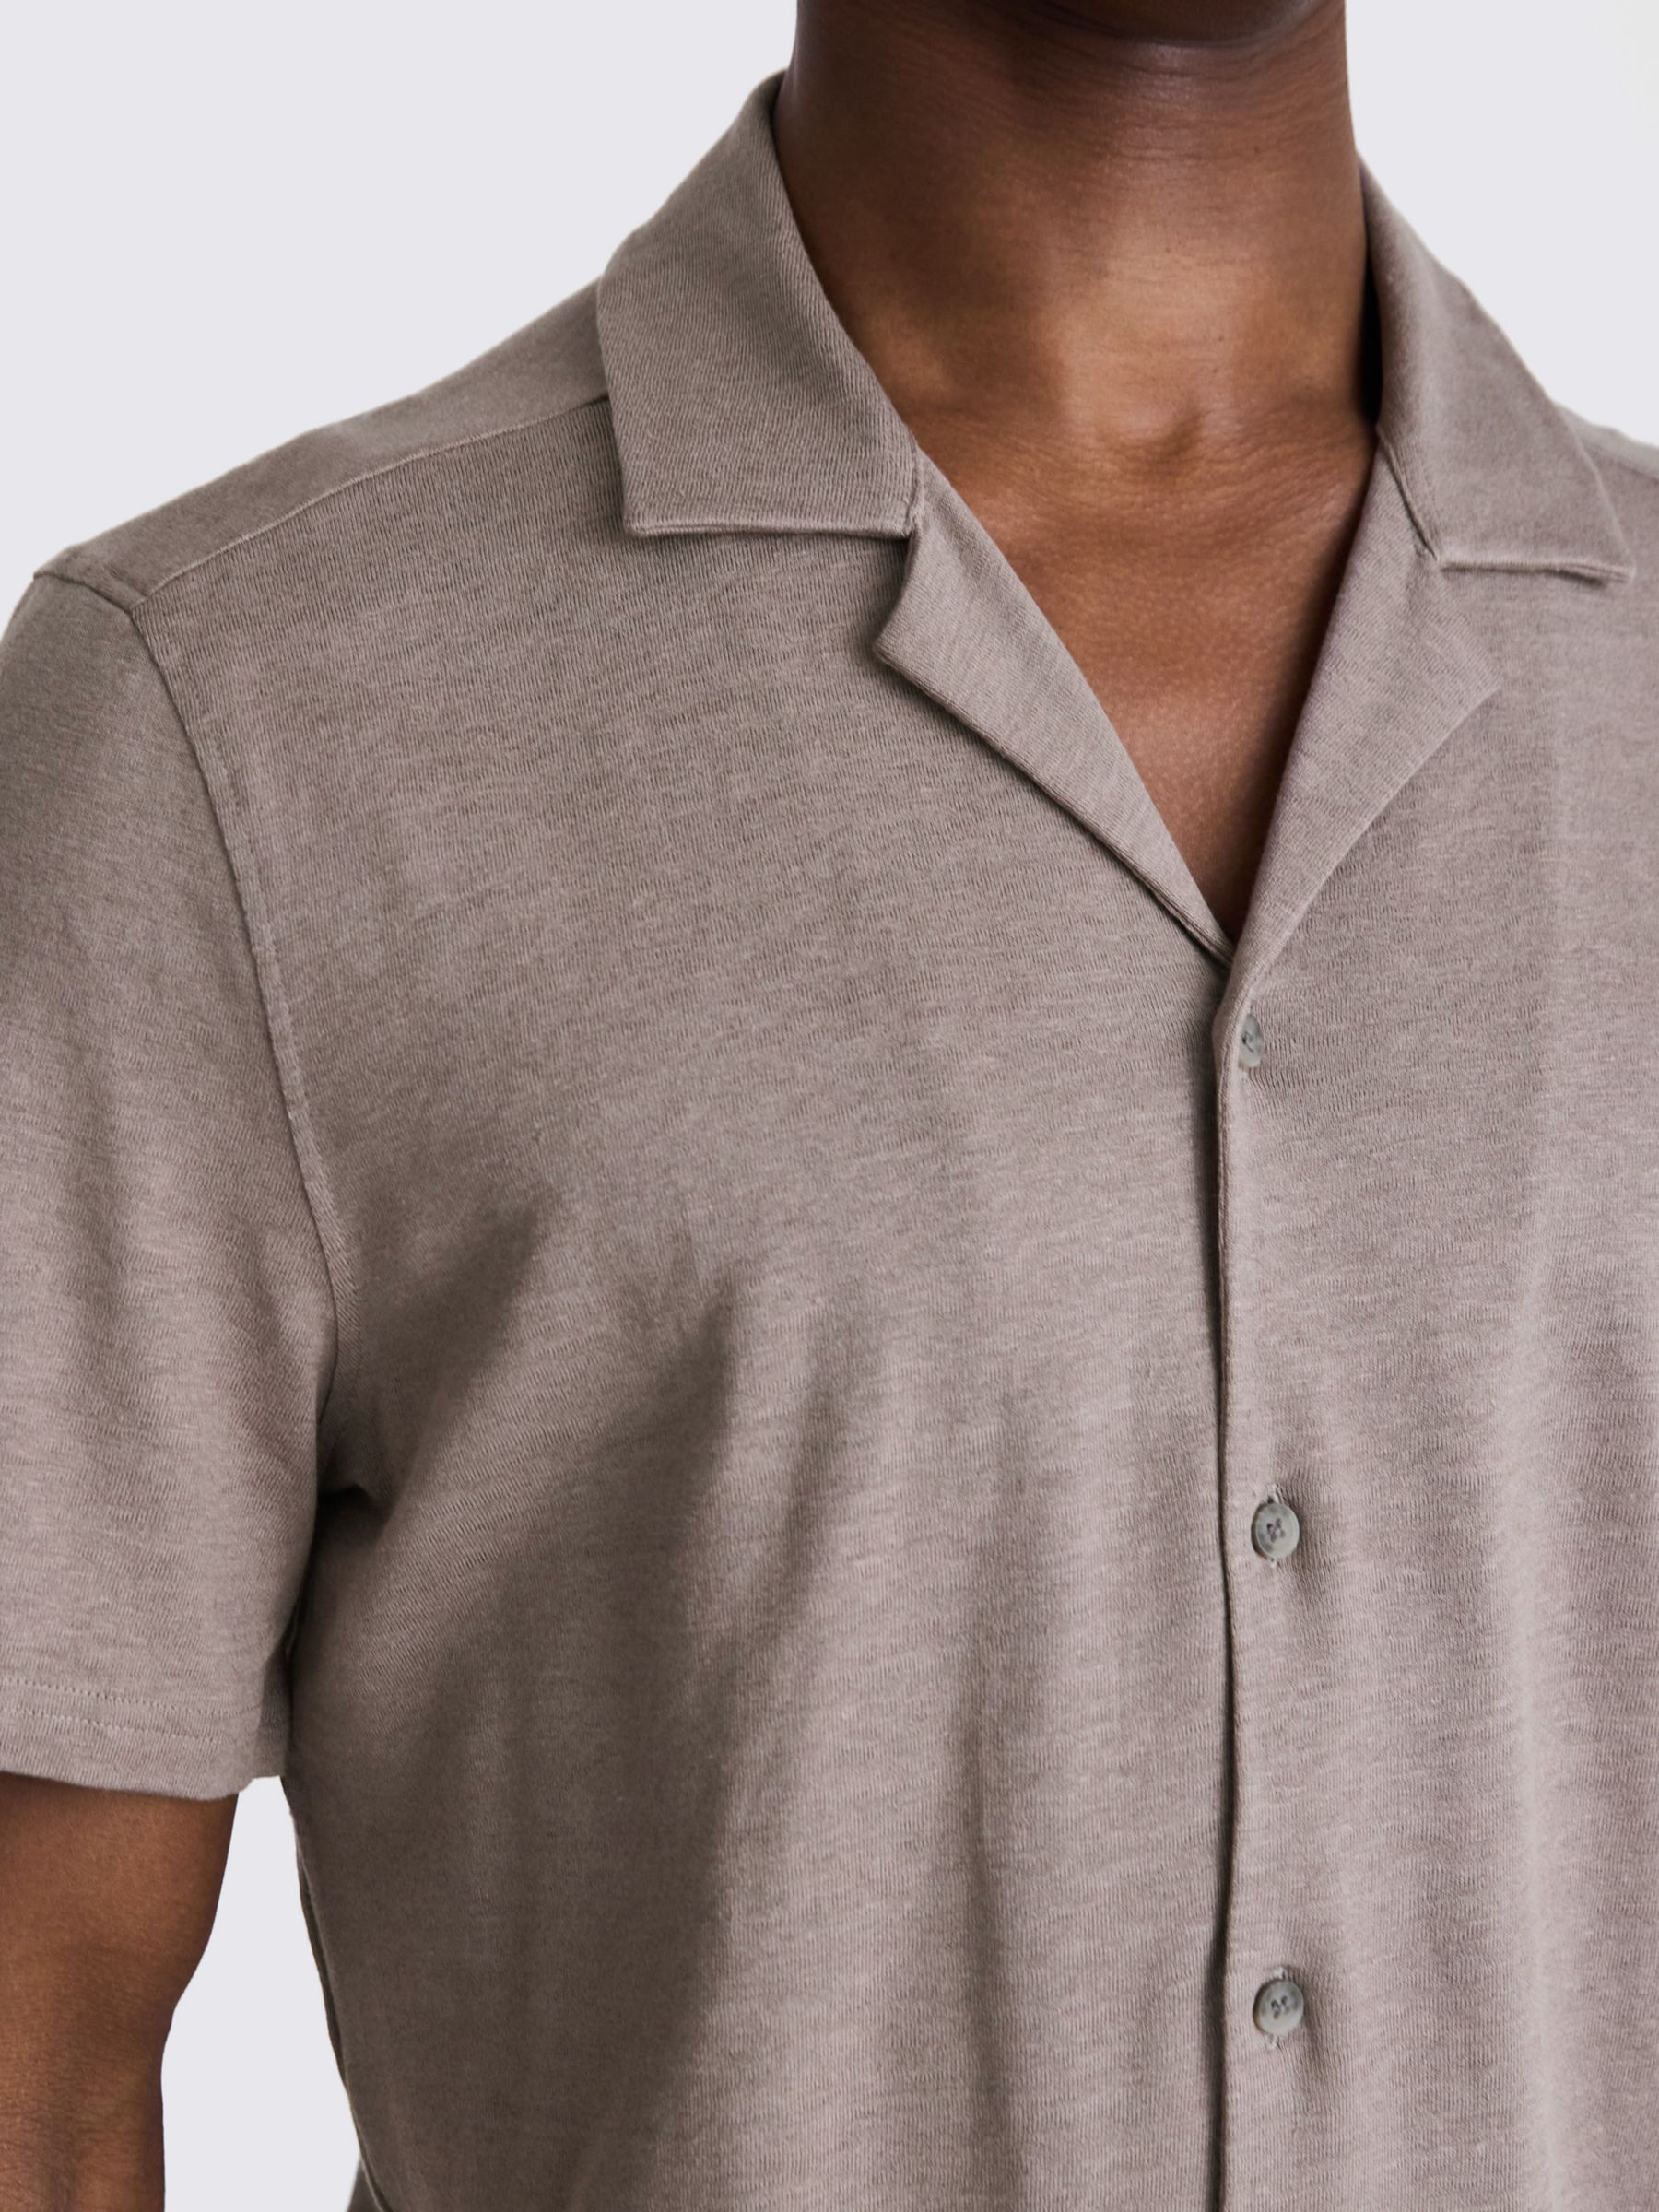 Moss Linen Blend Knitted Cuban Collar Shirt, Beige, L